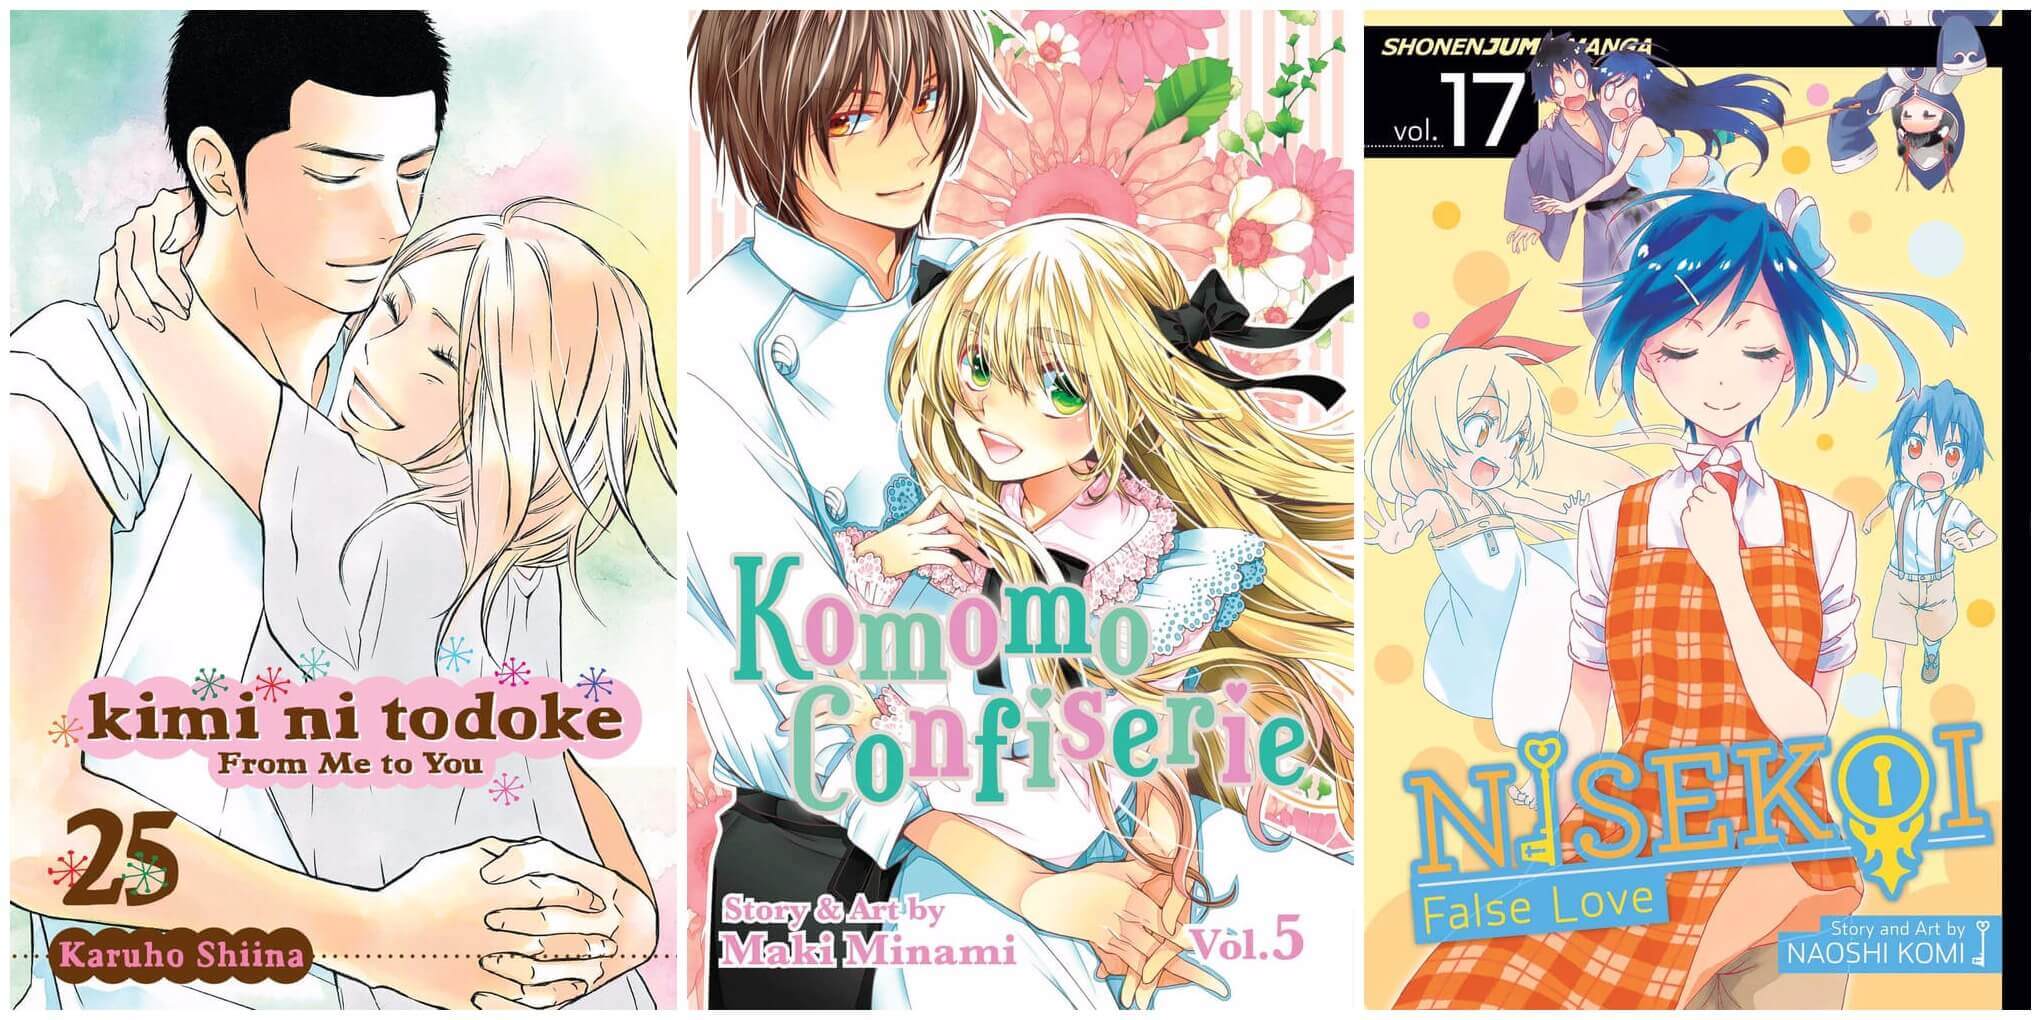 September 2016 Manga Releases Covers for Kimi ni Todoke, Komomo Confiserie, and Nisekoi.